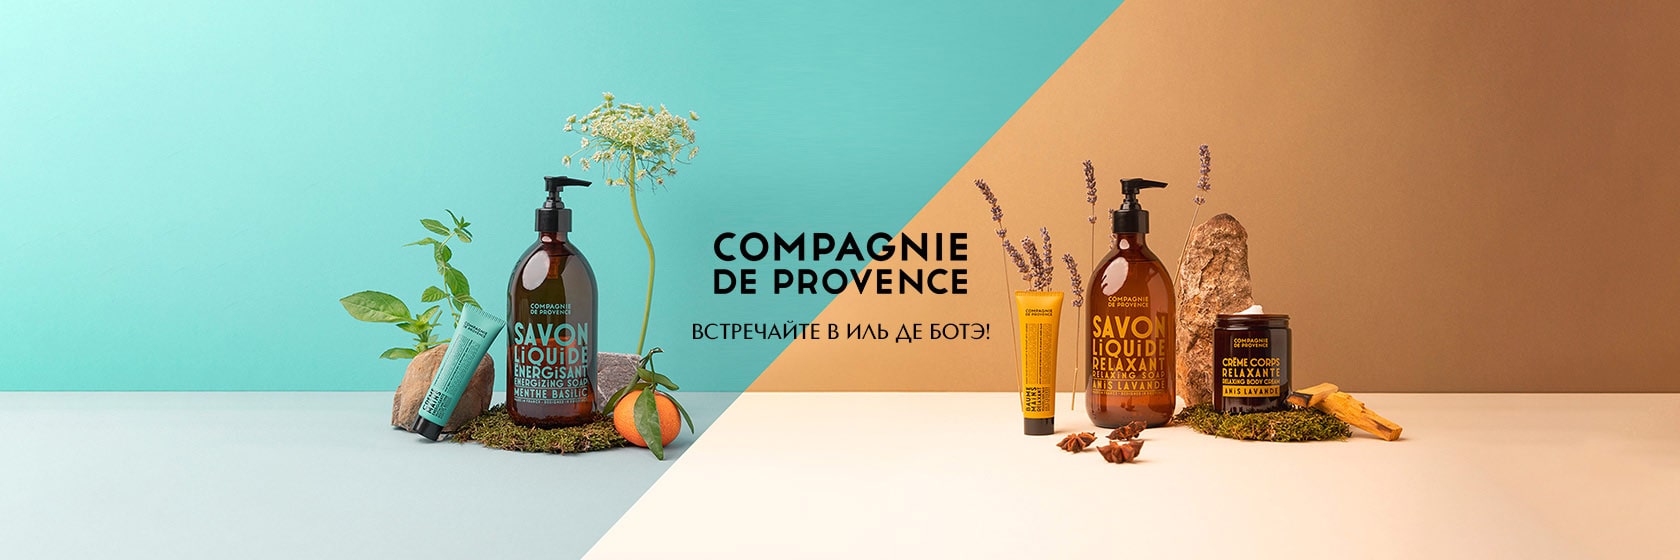 Встречайте новый бренд COMPAGNIE DE PROVENCE в ИЛЬ ДЕ БОТЭ!